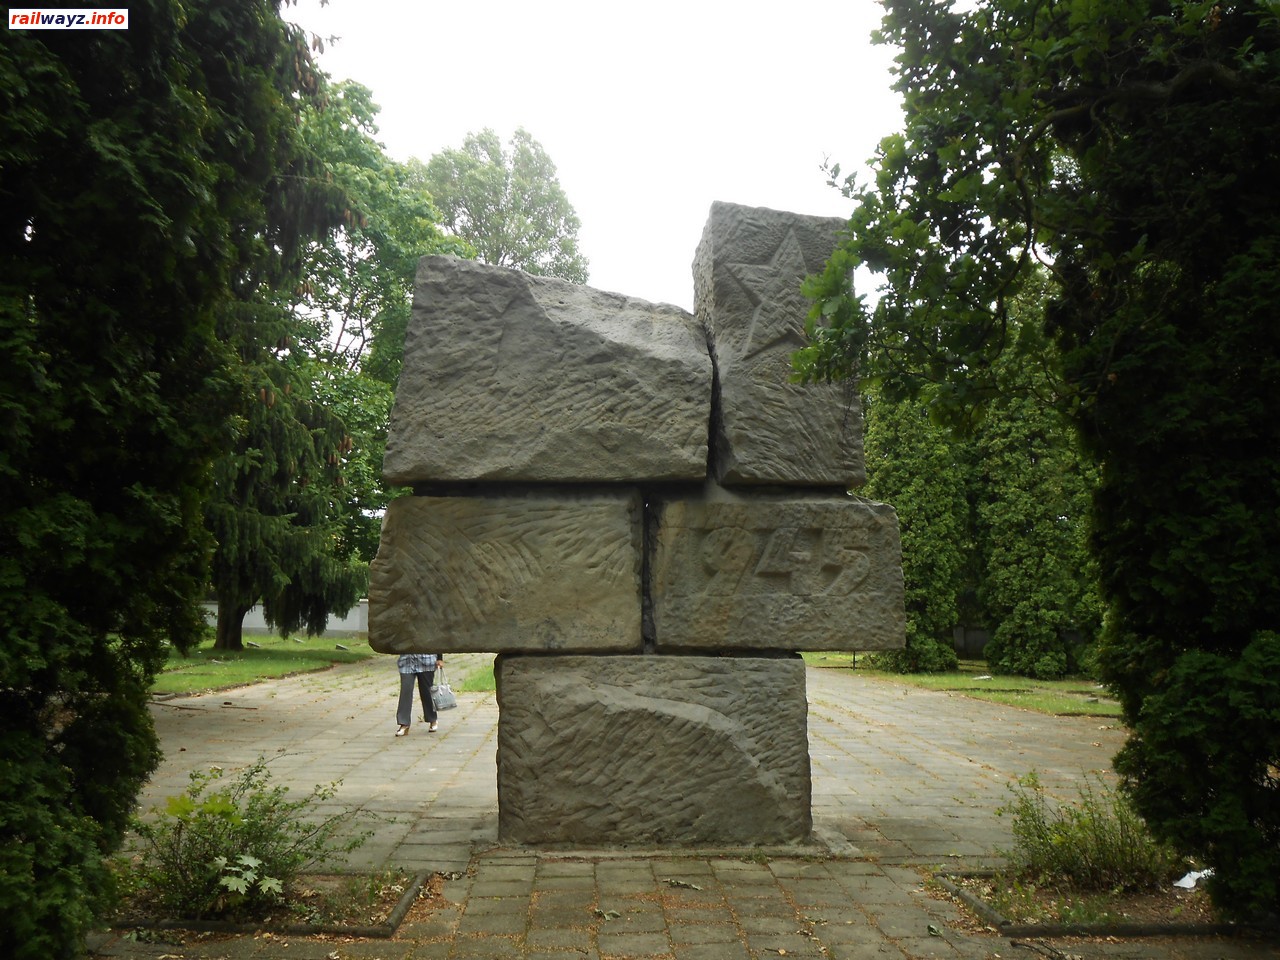 Памятник советским воинам, Военное кладбище, Ольштын